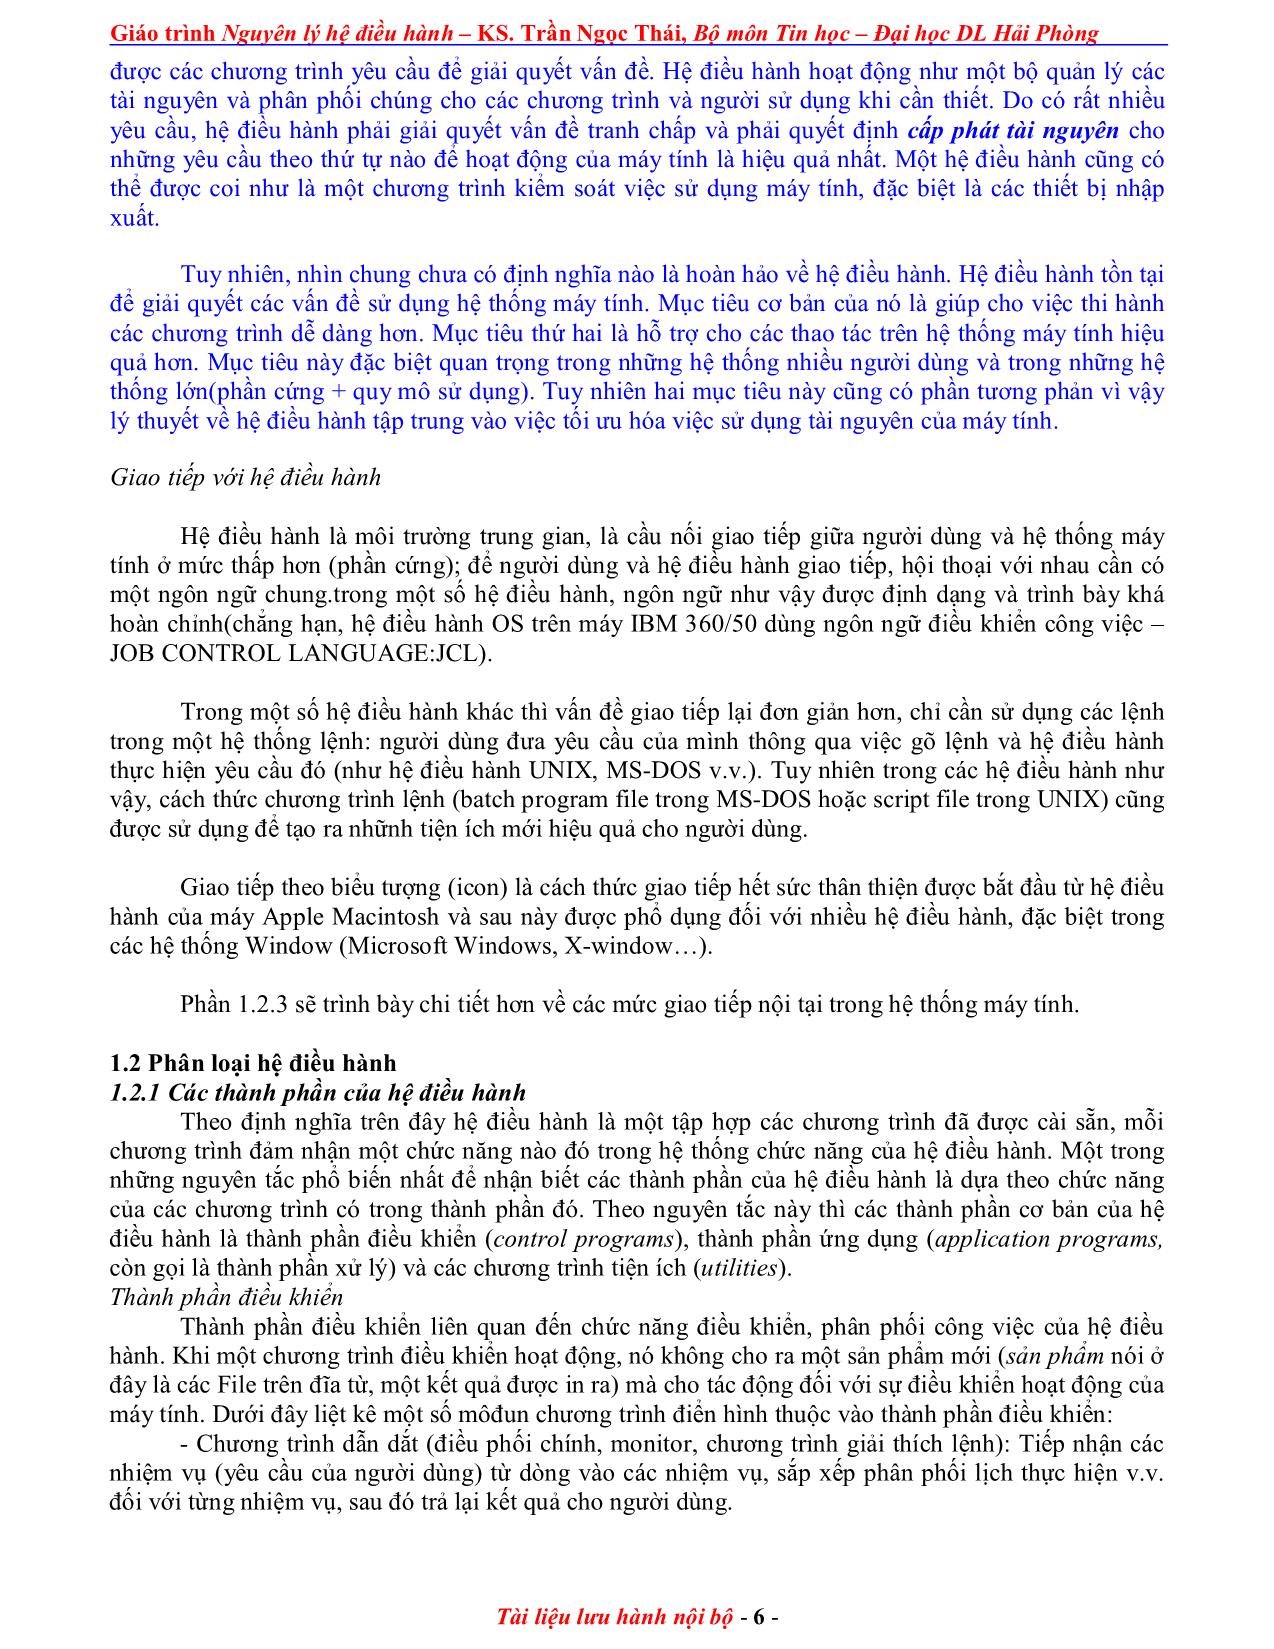 Giáo trình Nguyên lý điều hành (Phần 1) trang 6